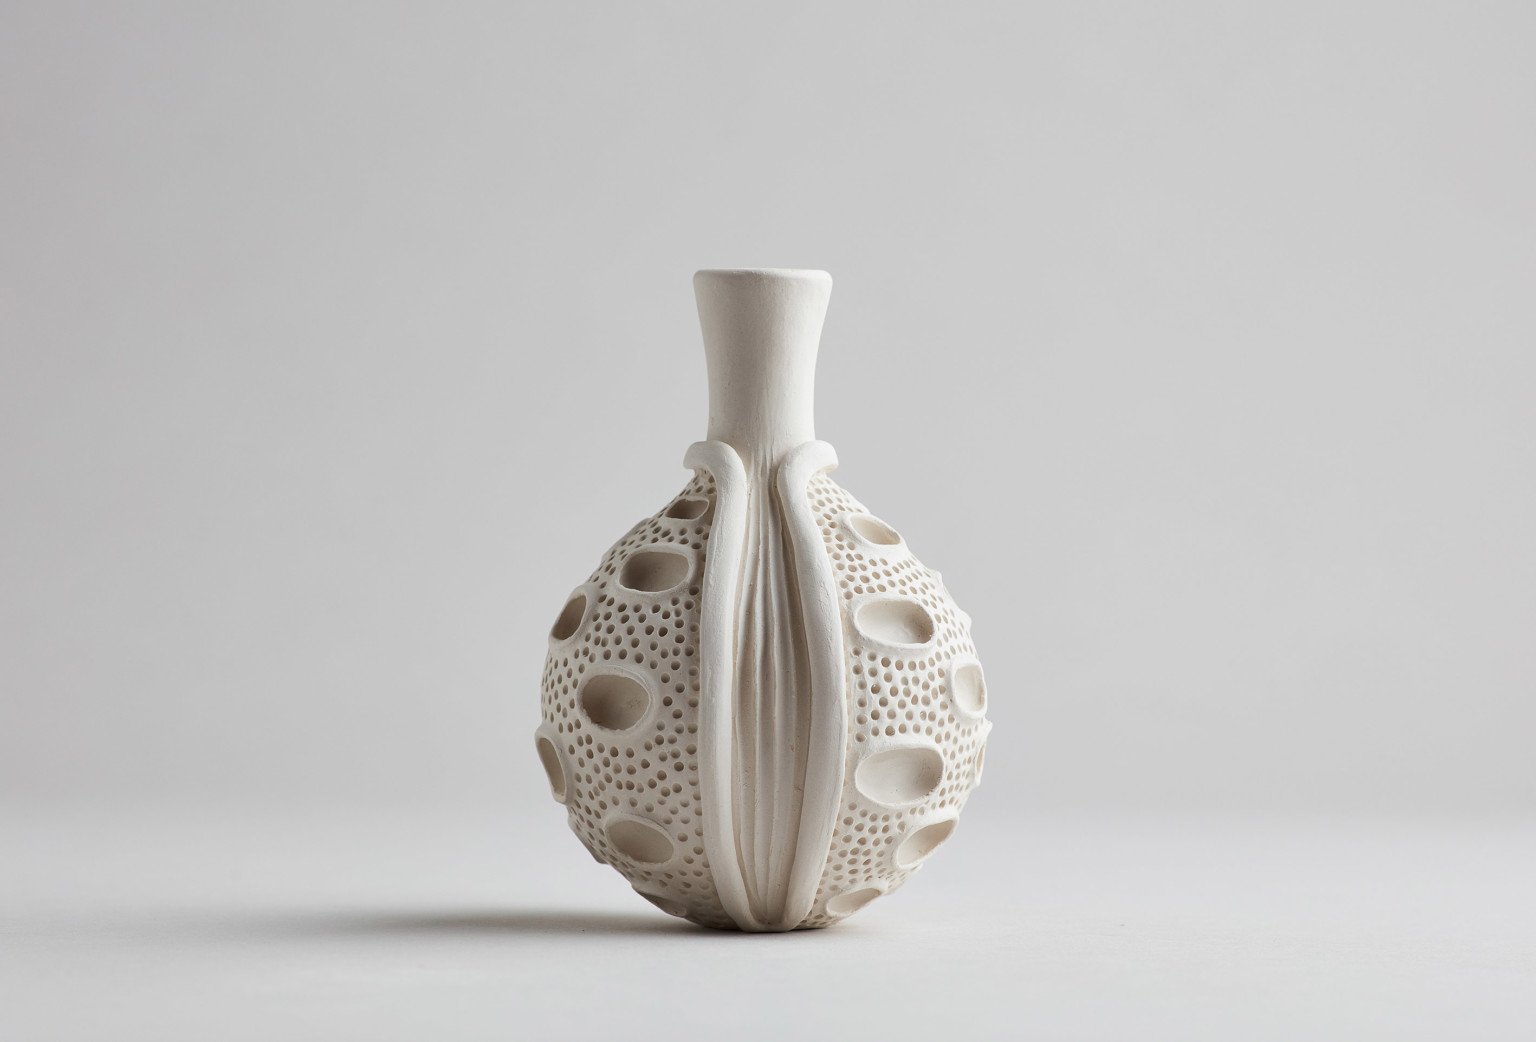 AnnaWhitehouse 5 cerámica arcilla artesanía reto arte 100días creatividad estimulante